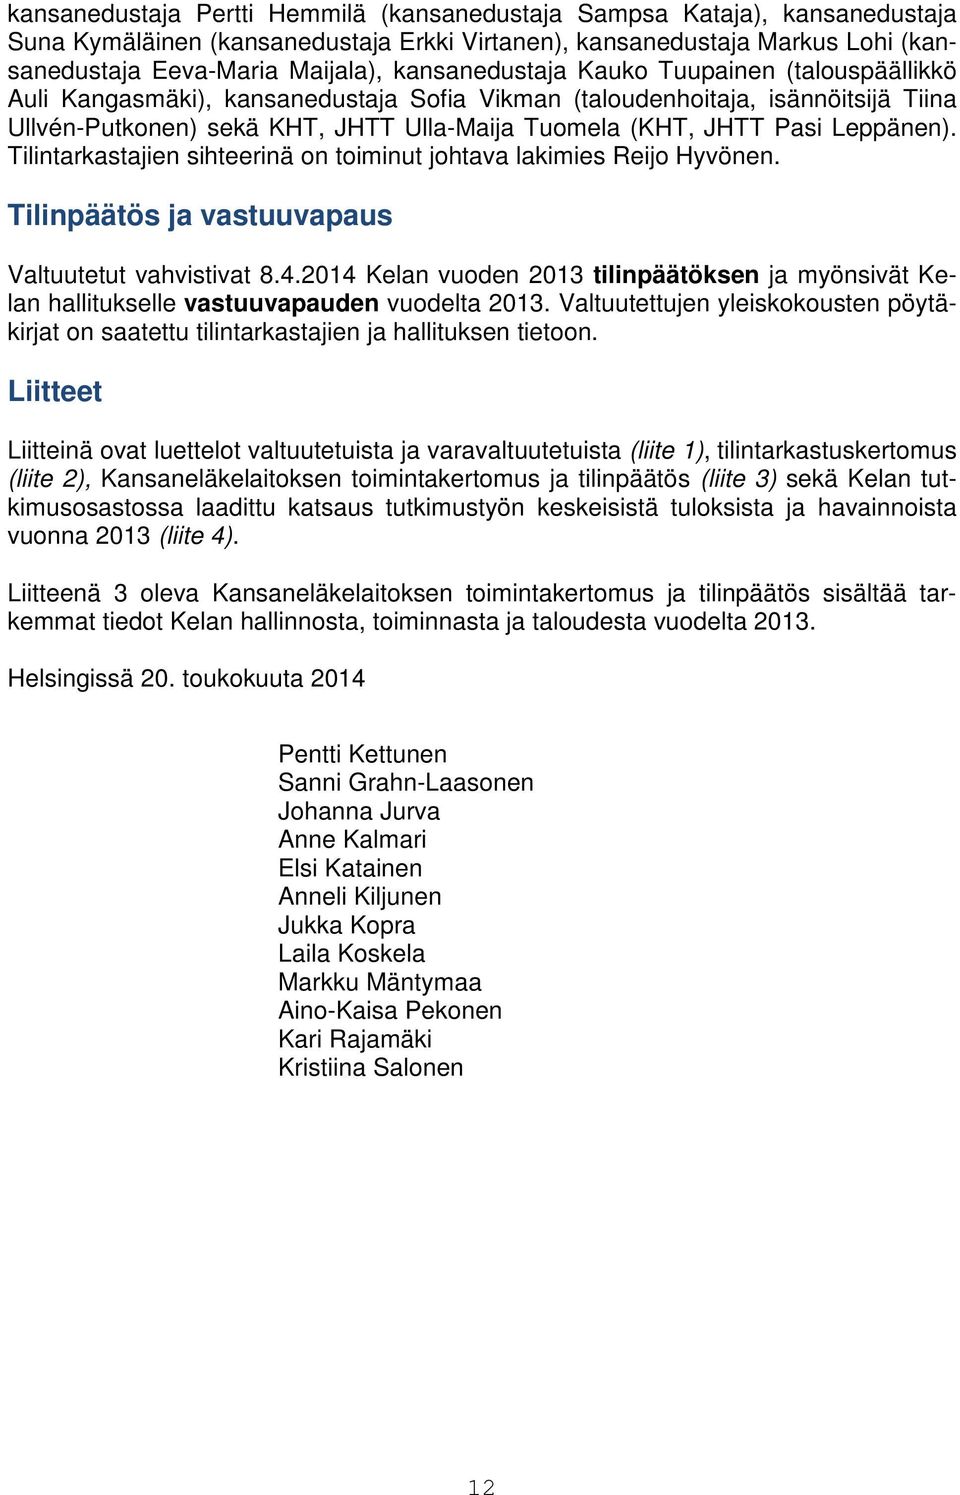 Leppänen). Tilintarkastajien sihteerinä on toiminut johtava lakimies Reijo Hyvönen. Tilinpäätös ja vastuuvapaus Valtuutetut vahvistivat 8.4.